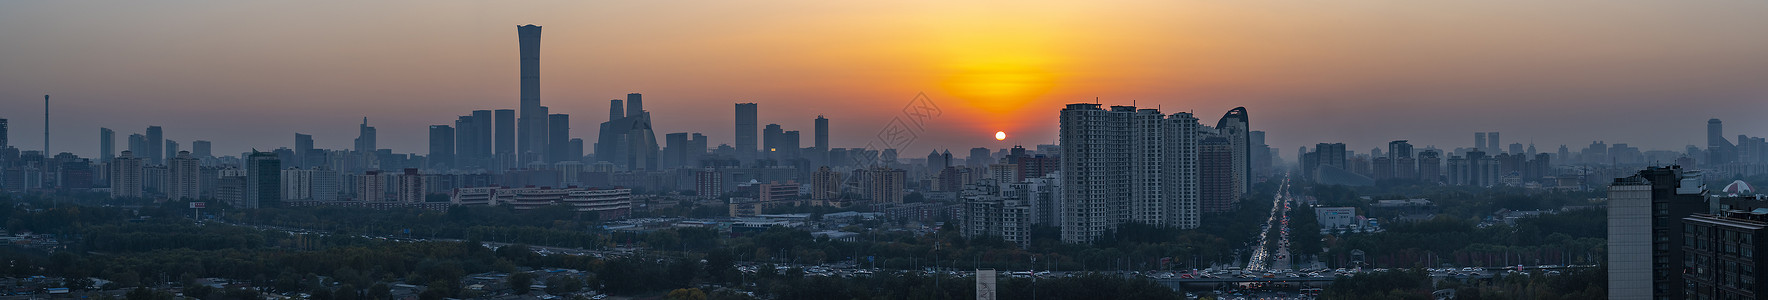 光线上升夕阳红北京国贸全景长片背景